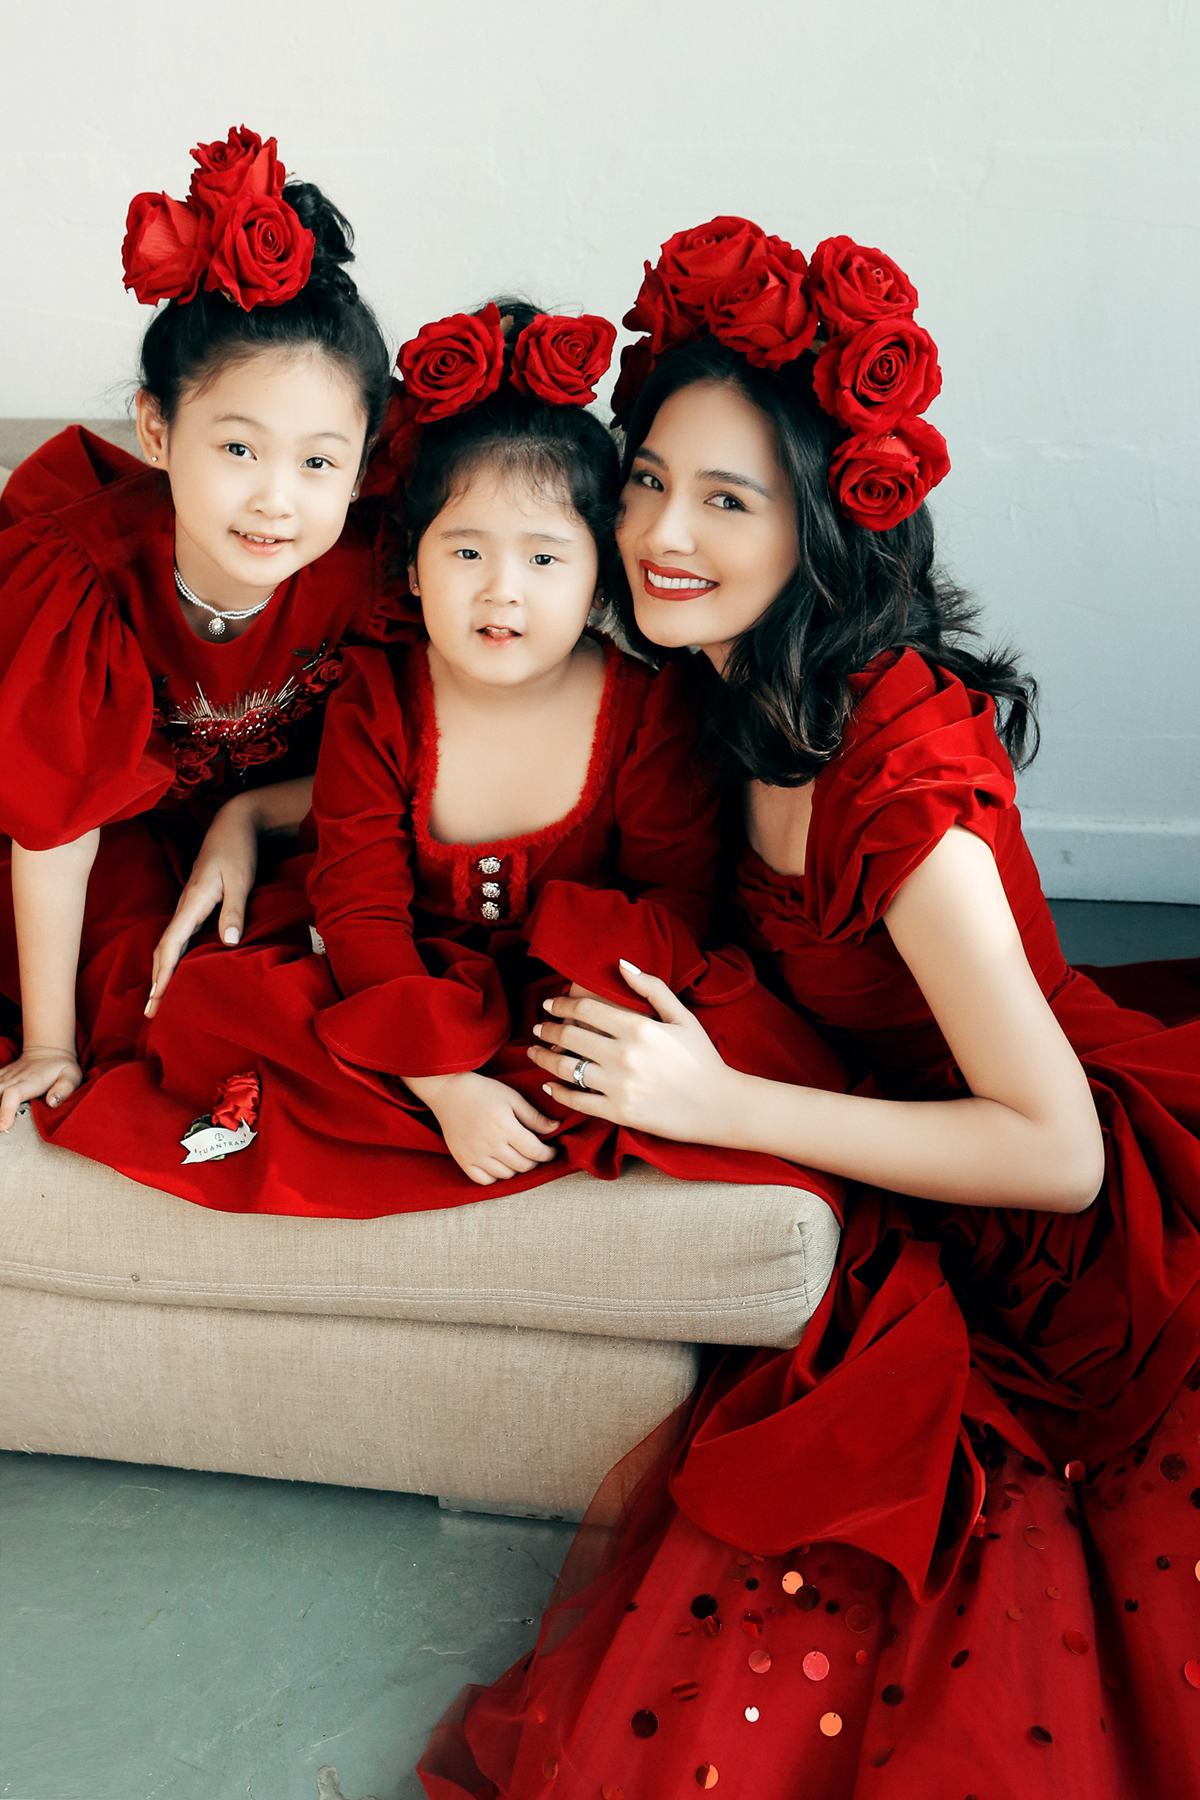 Cuộc sống kín tiếng của người đẹp Việt từng được mệnh danh là hoa hậu đẹp nhất Châu Á - Ảnh 4.